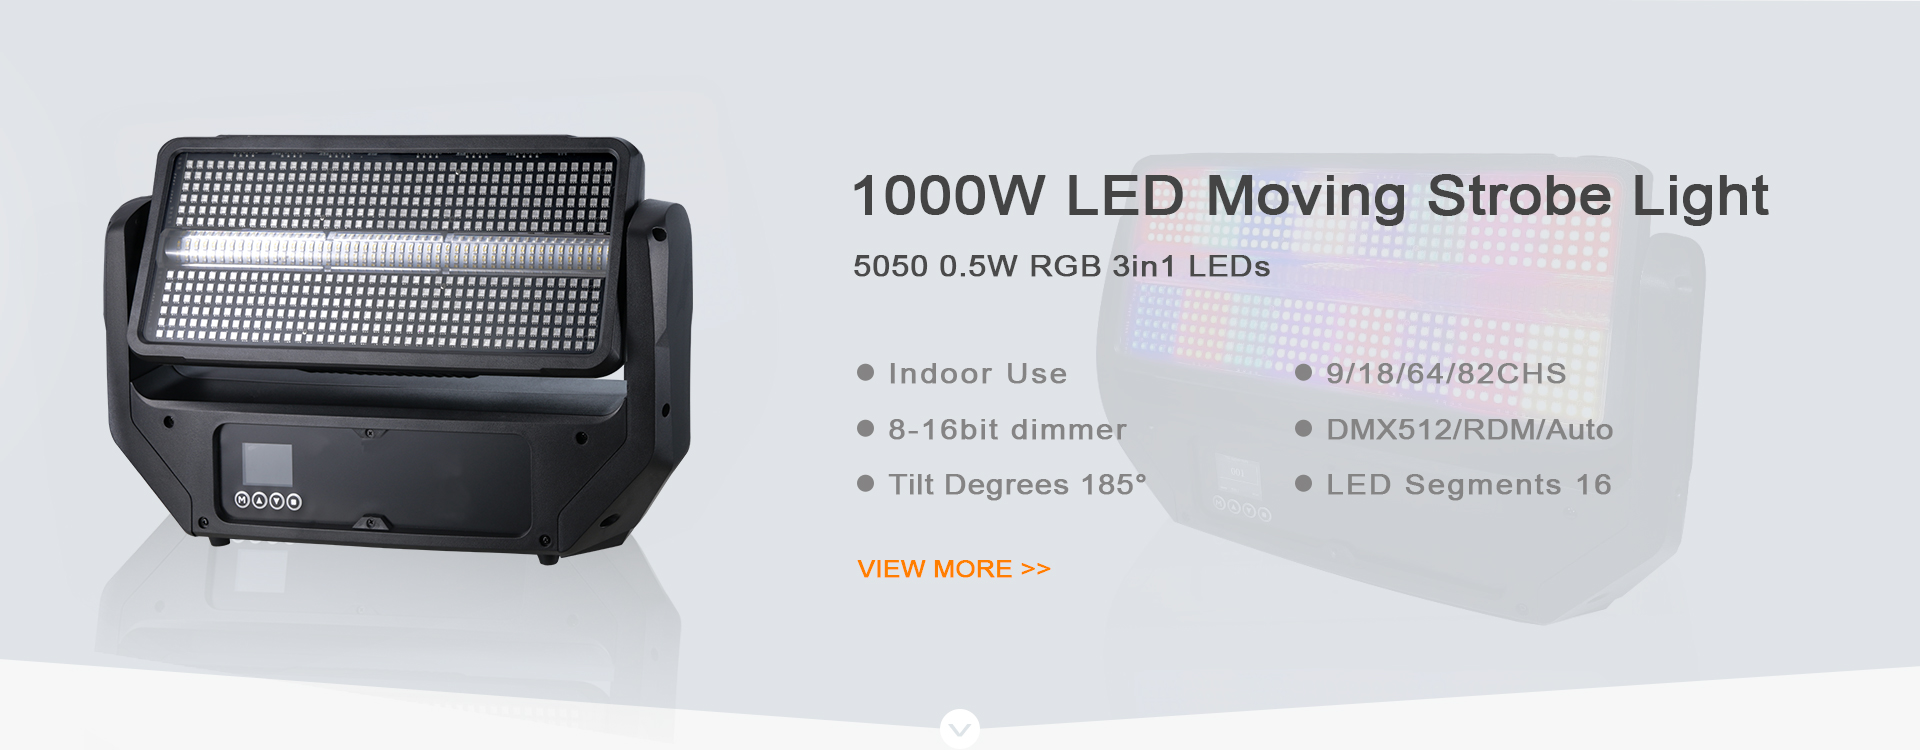 1000W LED Moving Strobe light